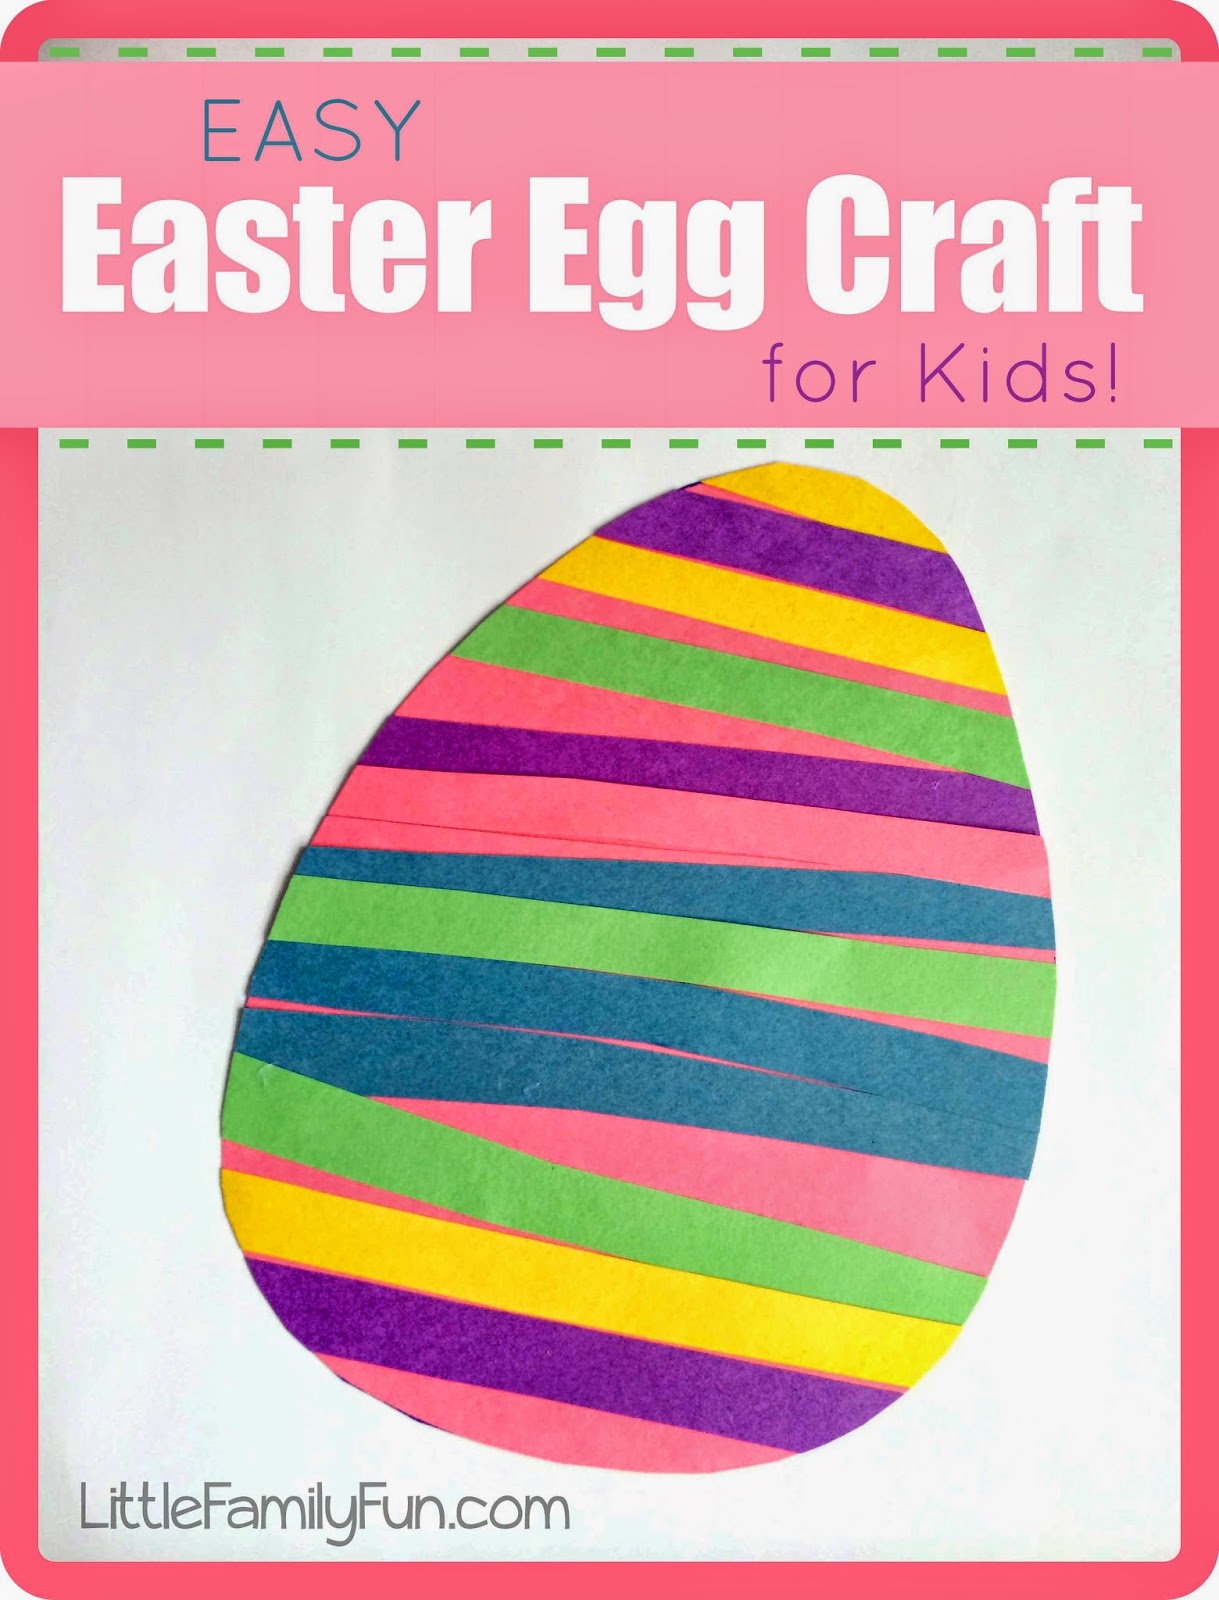 http://www.littlefamilyfun.com/2014/04/easy-easter-egg-craft-for-kids.html